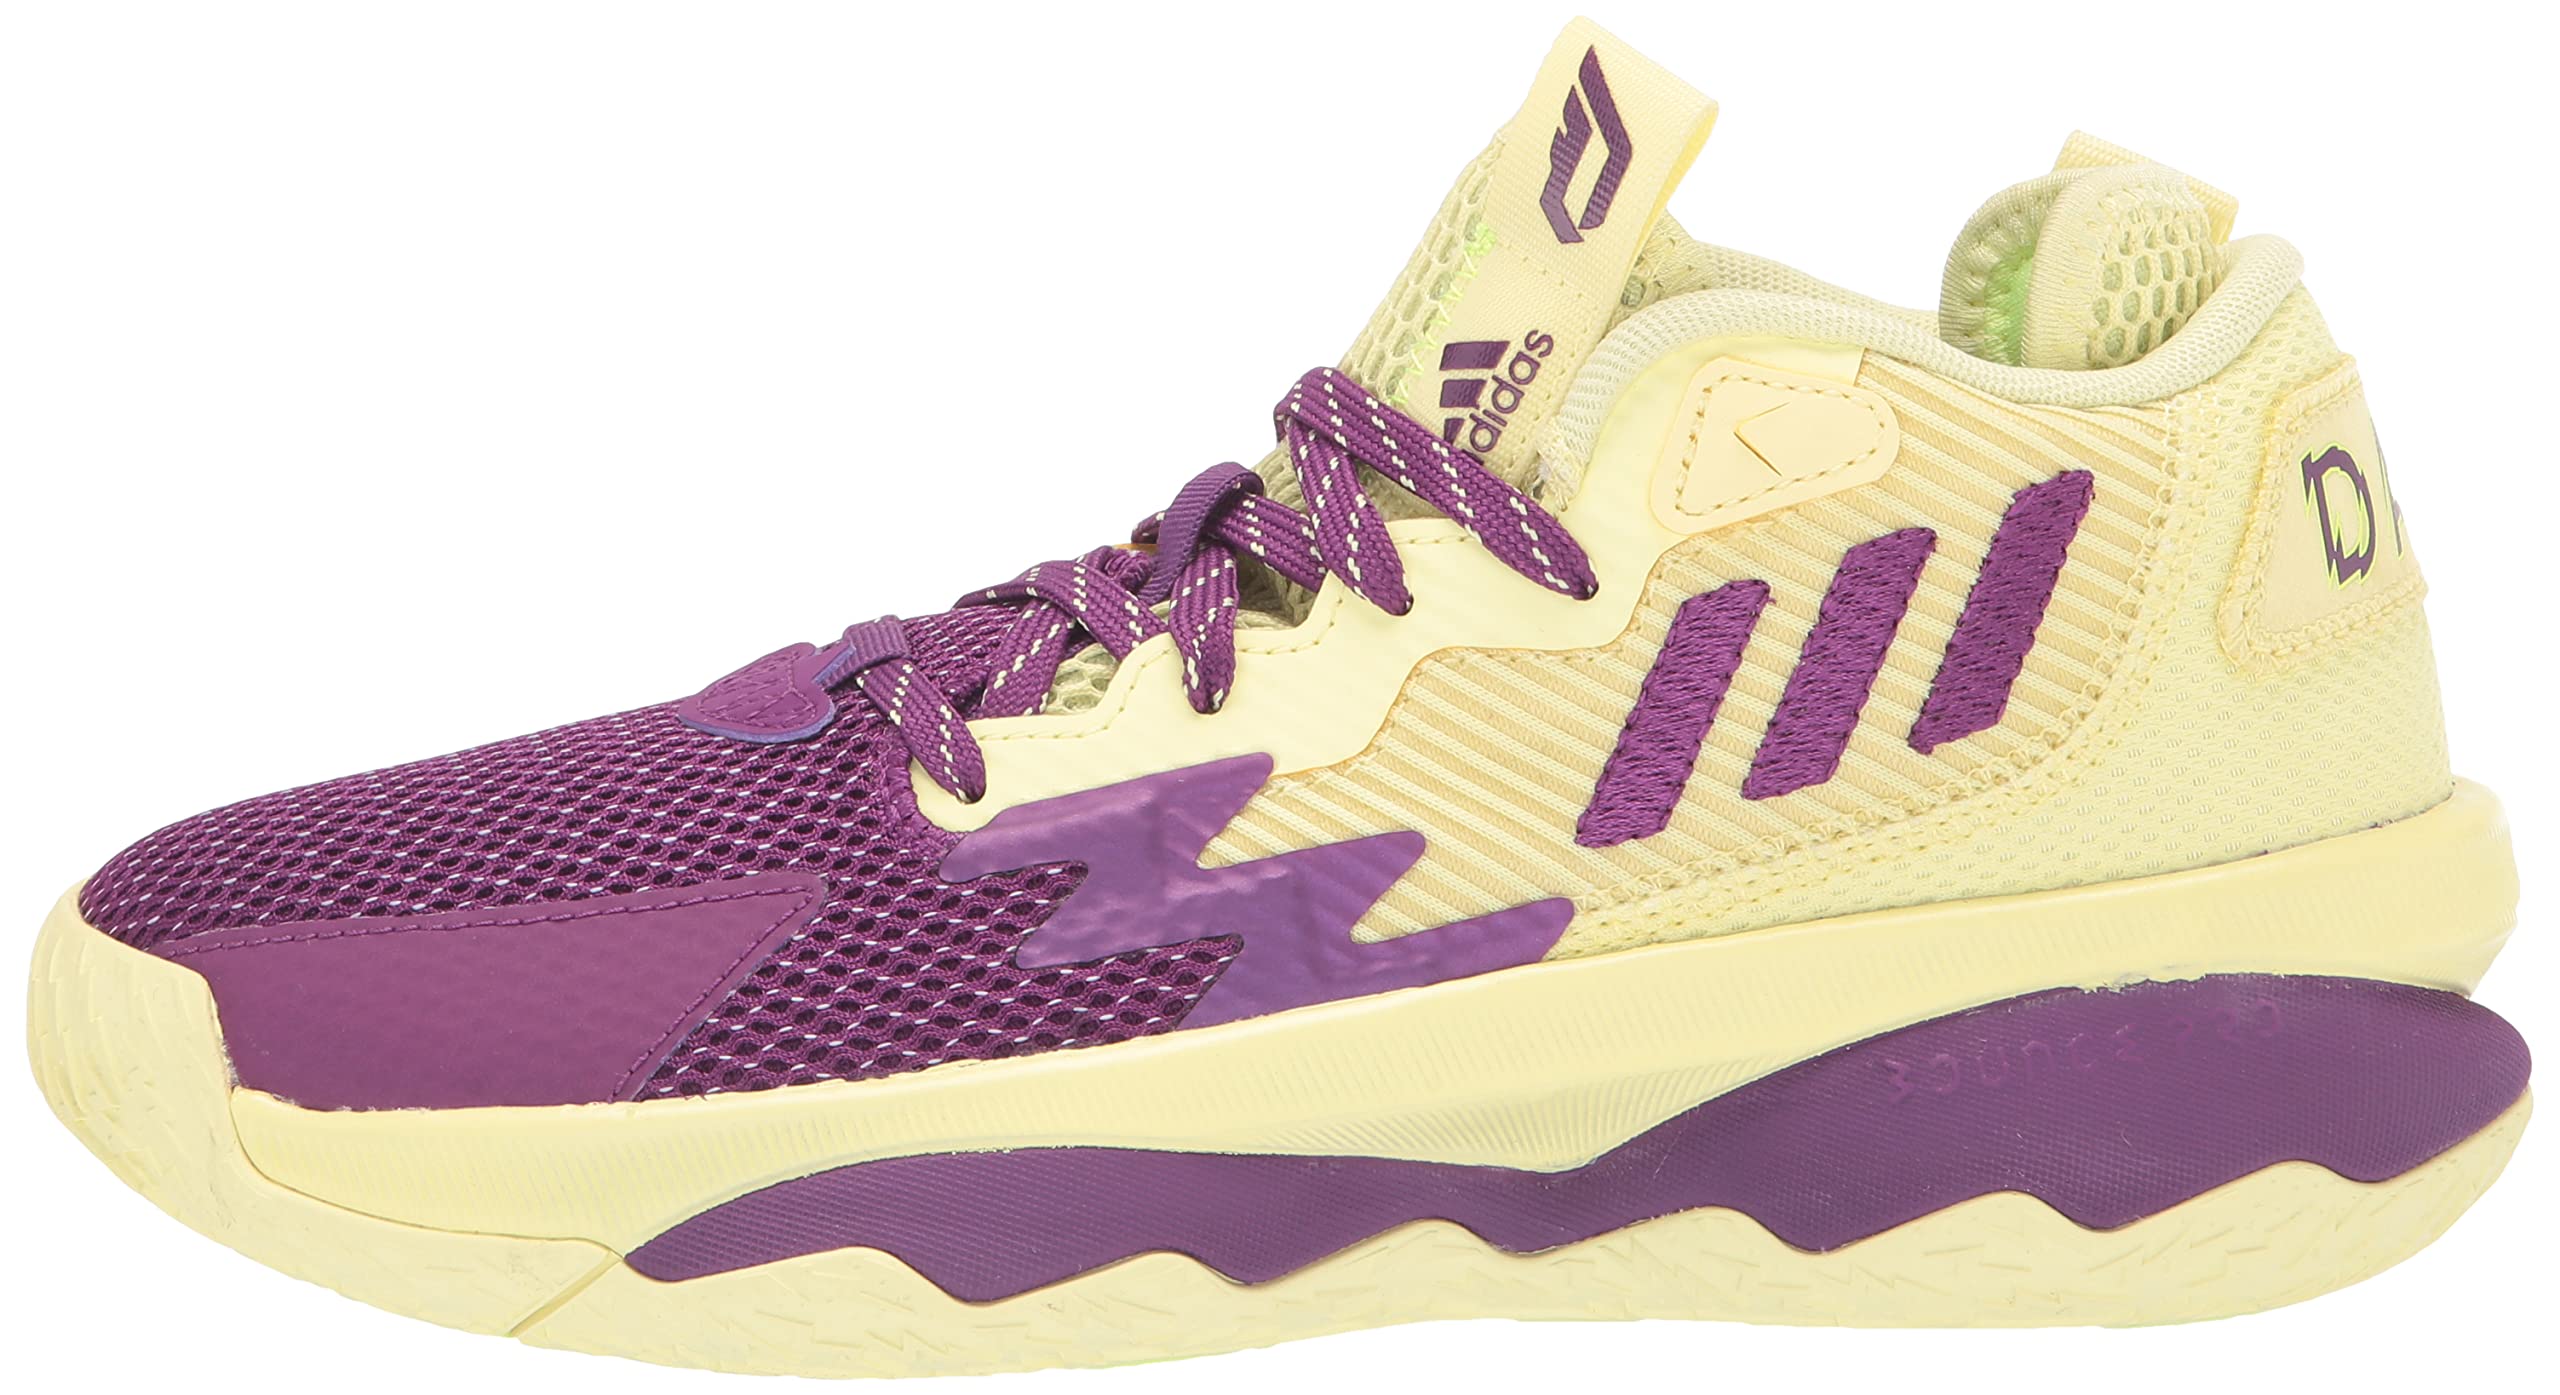 adidas Unisex-Adult Dame 8 Basketball Shoe